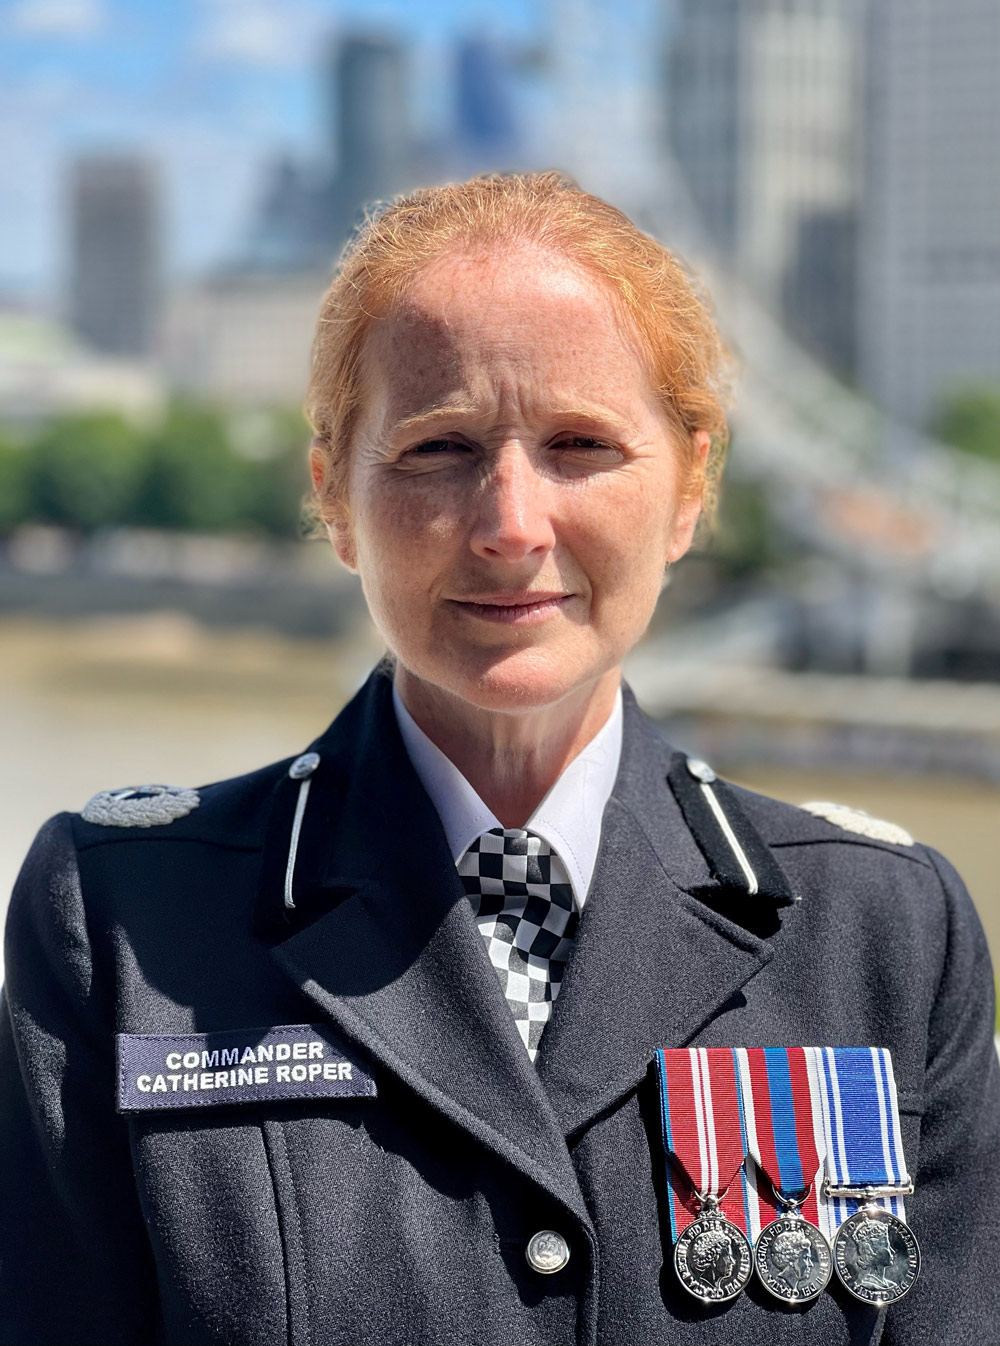 Wiltshire Police Chief Constable, Catherine Roper